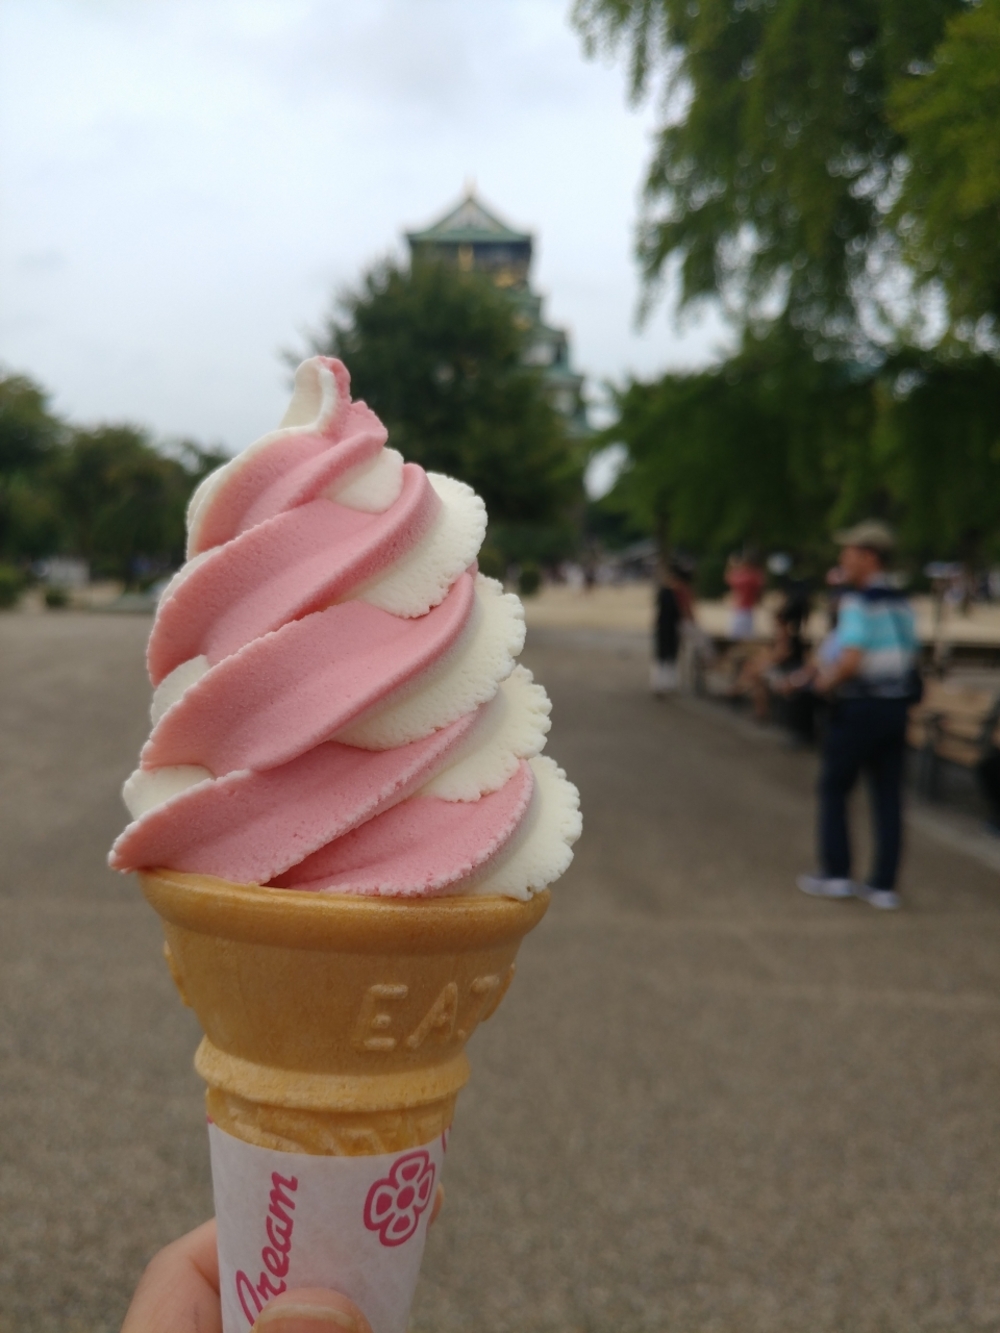 덥다고 투덜되니 총무님의 지갑이 열렸습니당^^ 맛난 아이스크림